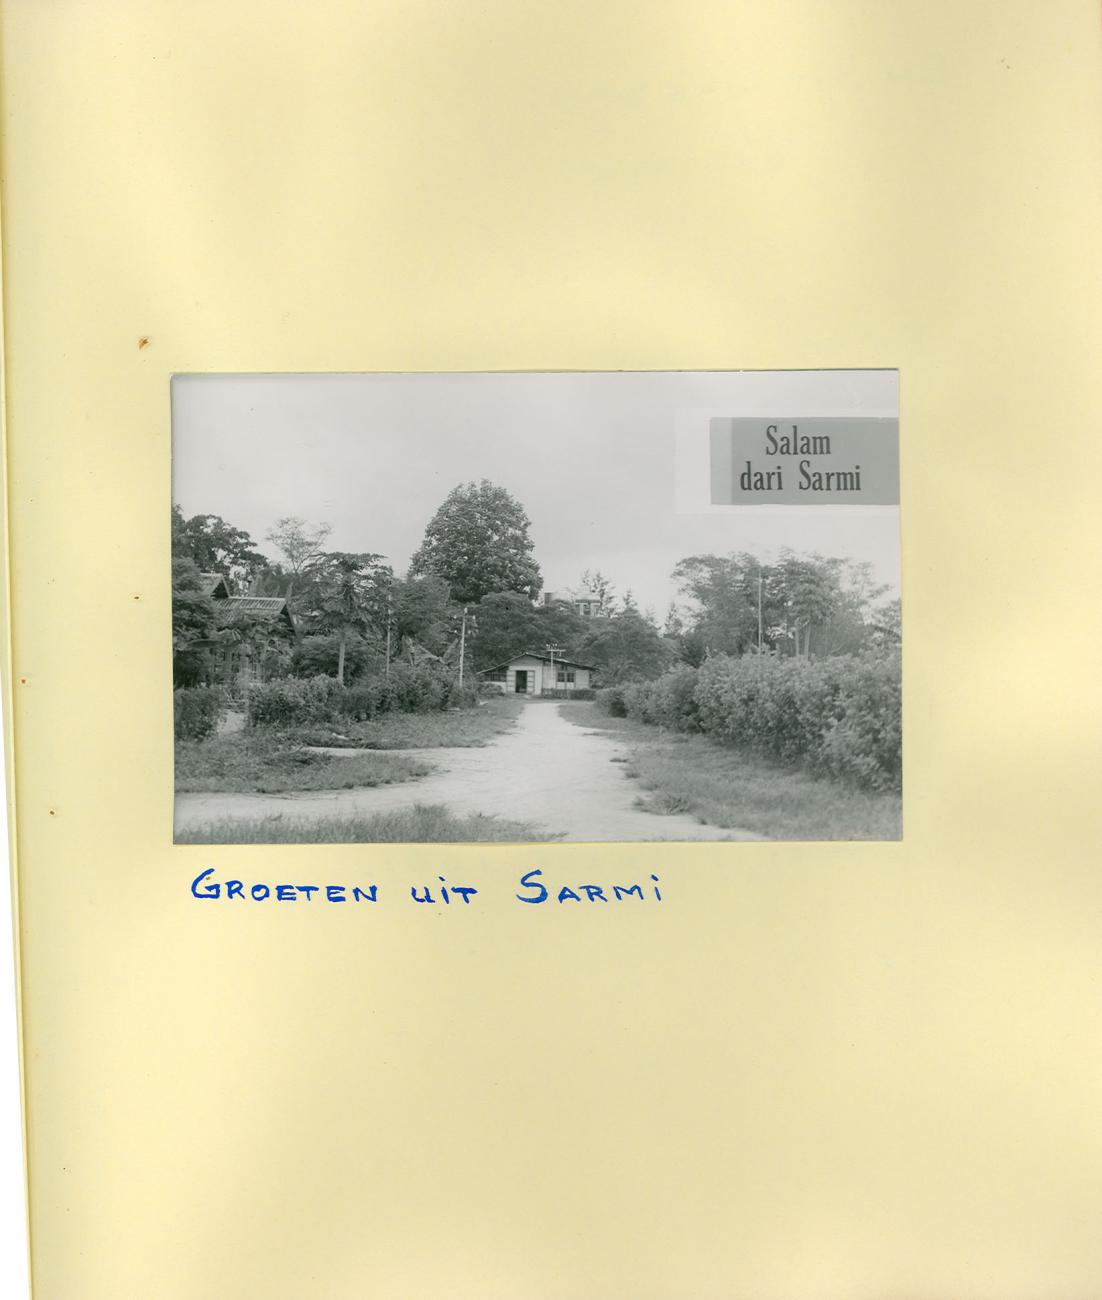 BD/83/59 - 
Streetview on Sarmi
